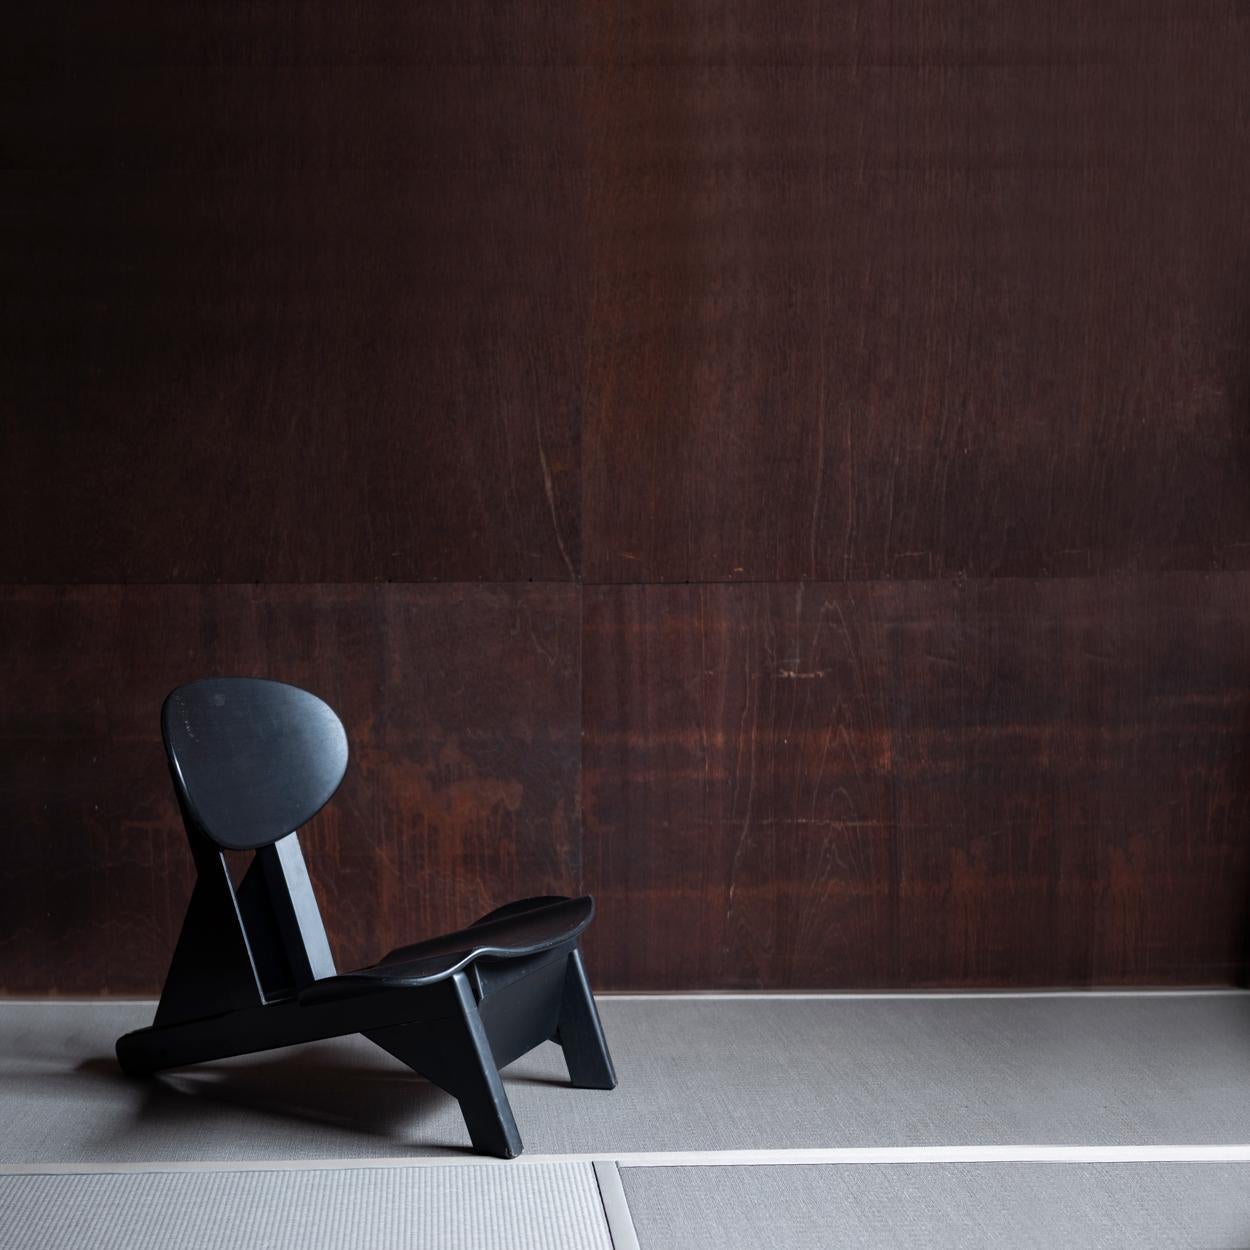 Seltener und einzigartiger skulpturaler niedriger Stuhl in Schwarz, entworfen von dem französischen Designer Alain Gaubert.
Der Stuhl kann in 3 verschiedenen Positionen verwendet werden; um auf dem Stuhl normal als niedriger Stuhl zu sitzen, um auf